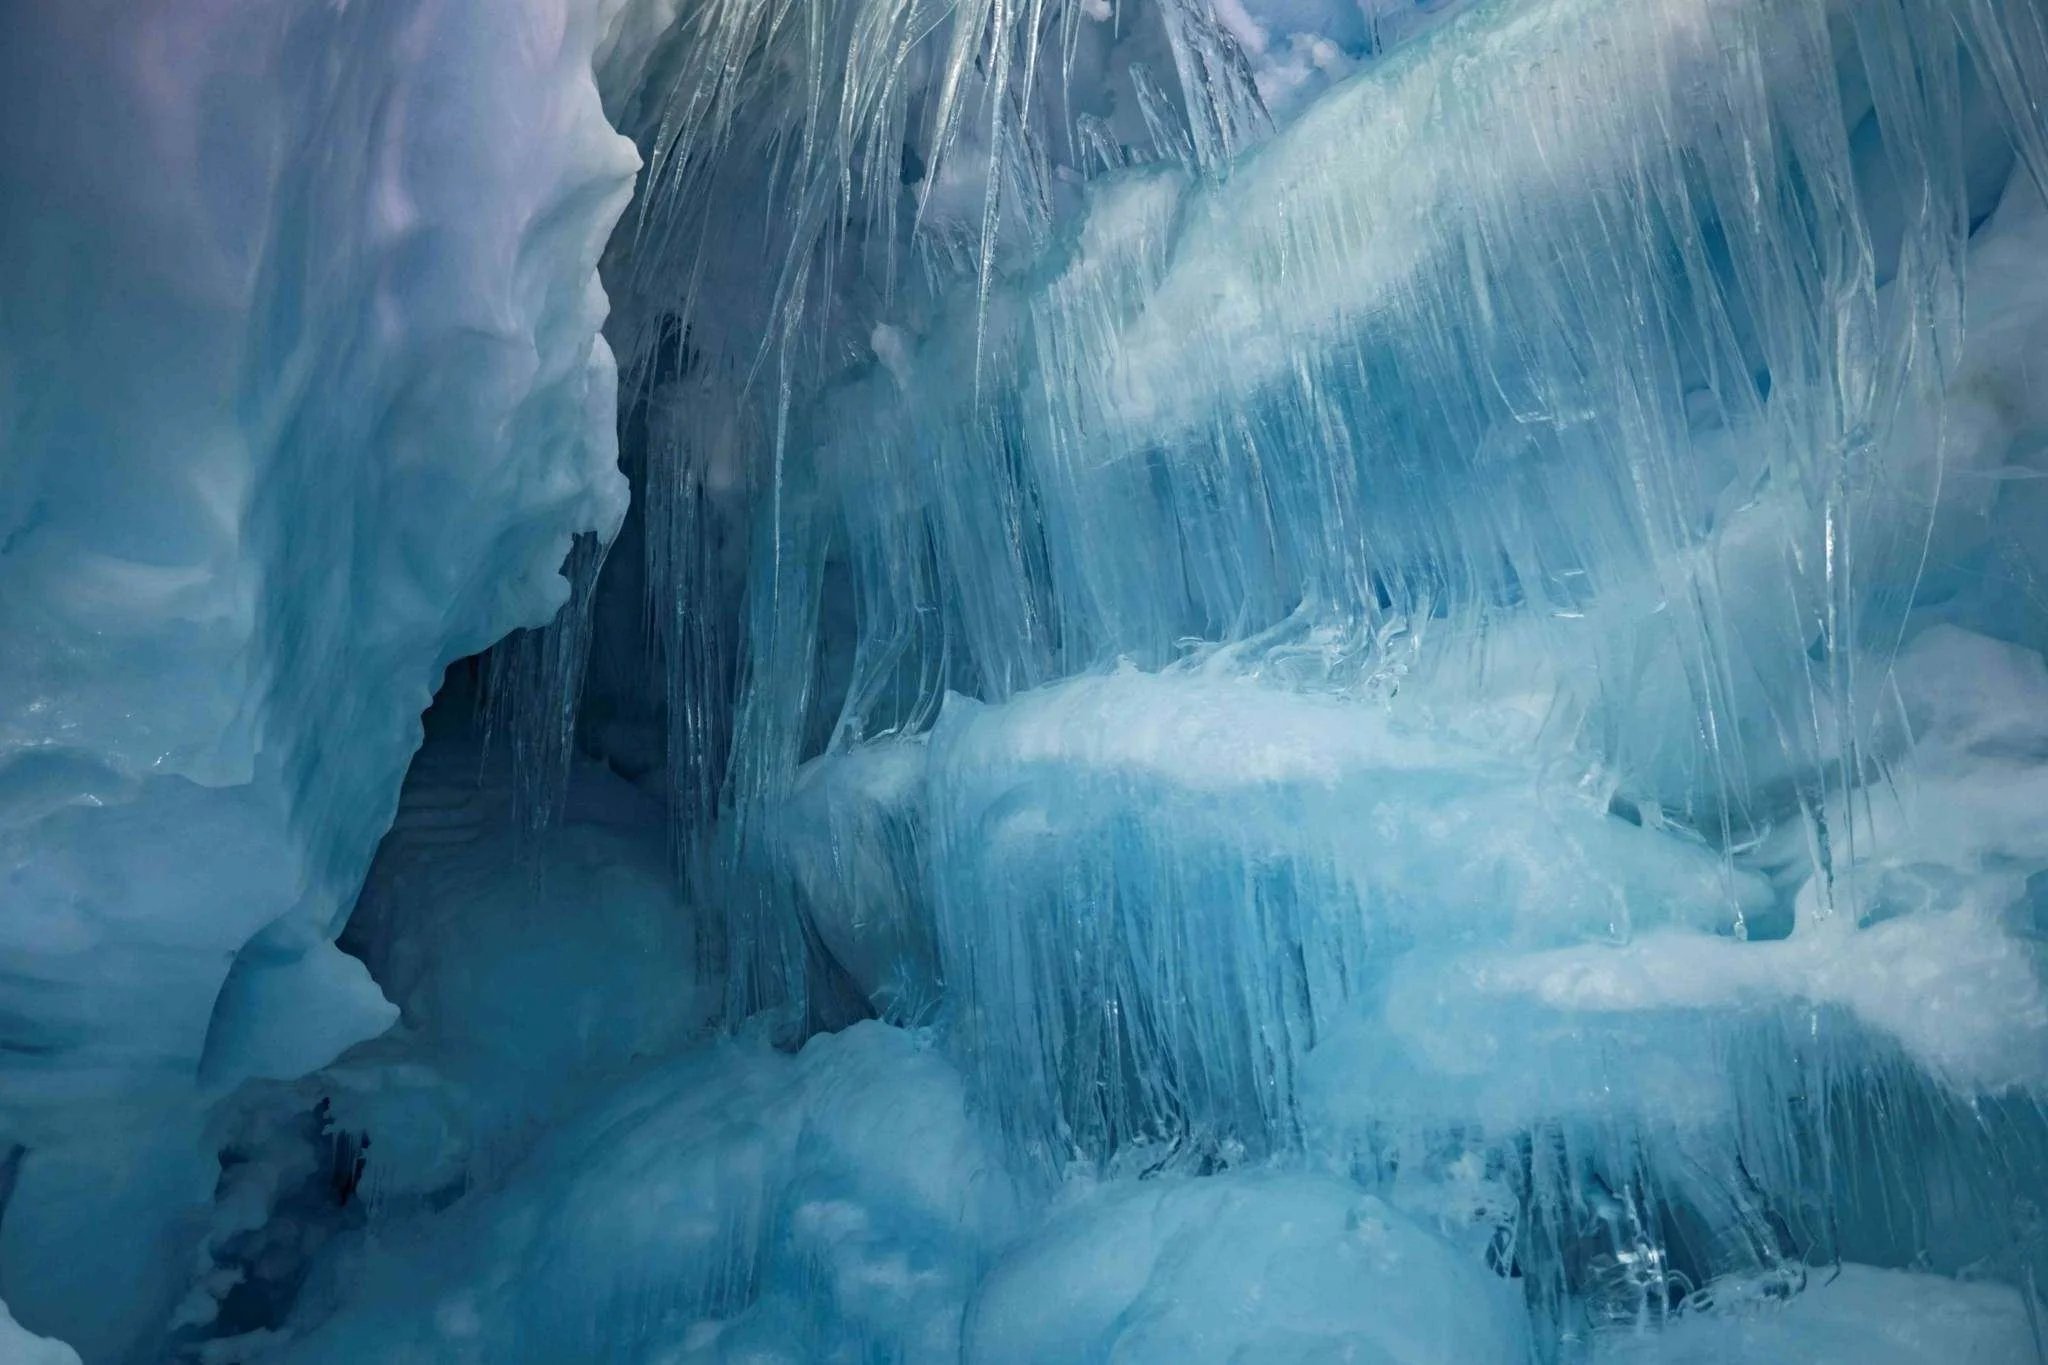 Украинские полярники нашли 'потерянную' пещеру в Антарктиде, и эти фото поражают - фото 449736